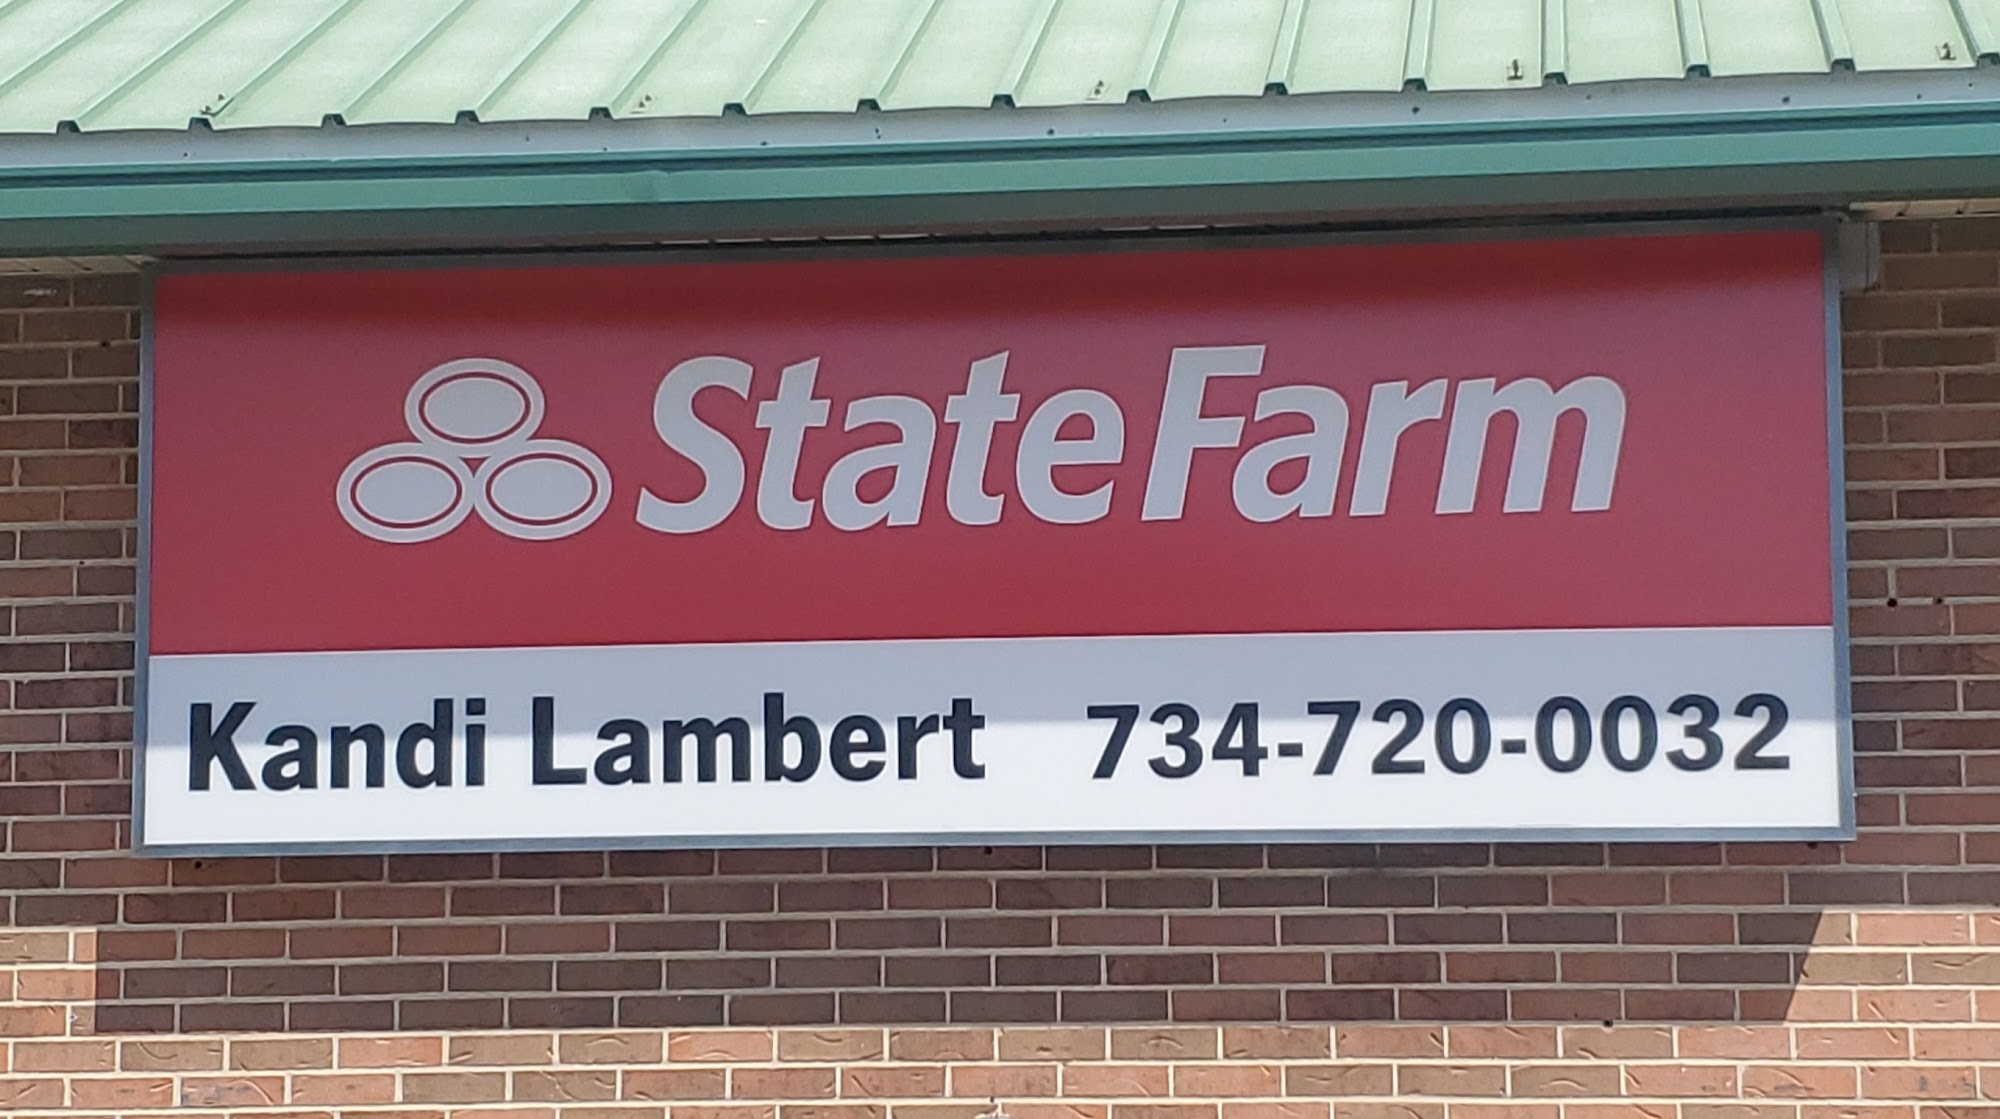 Kandi Lambert - State Farm Insurance Agent